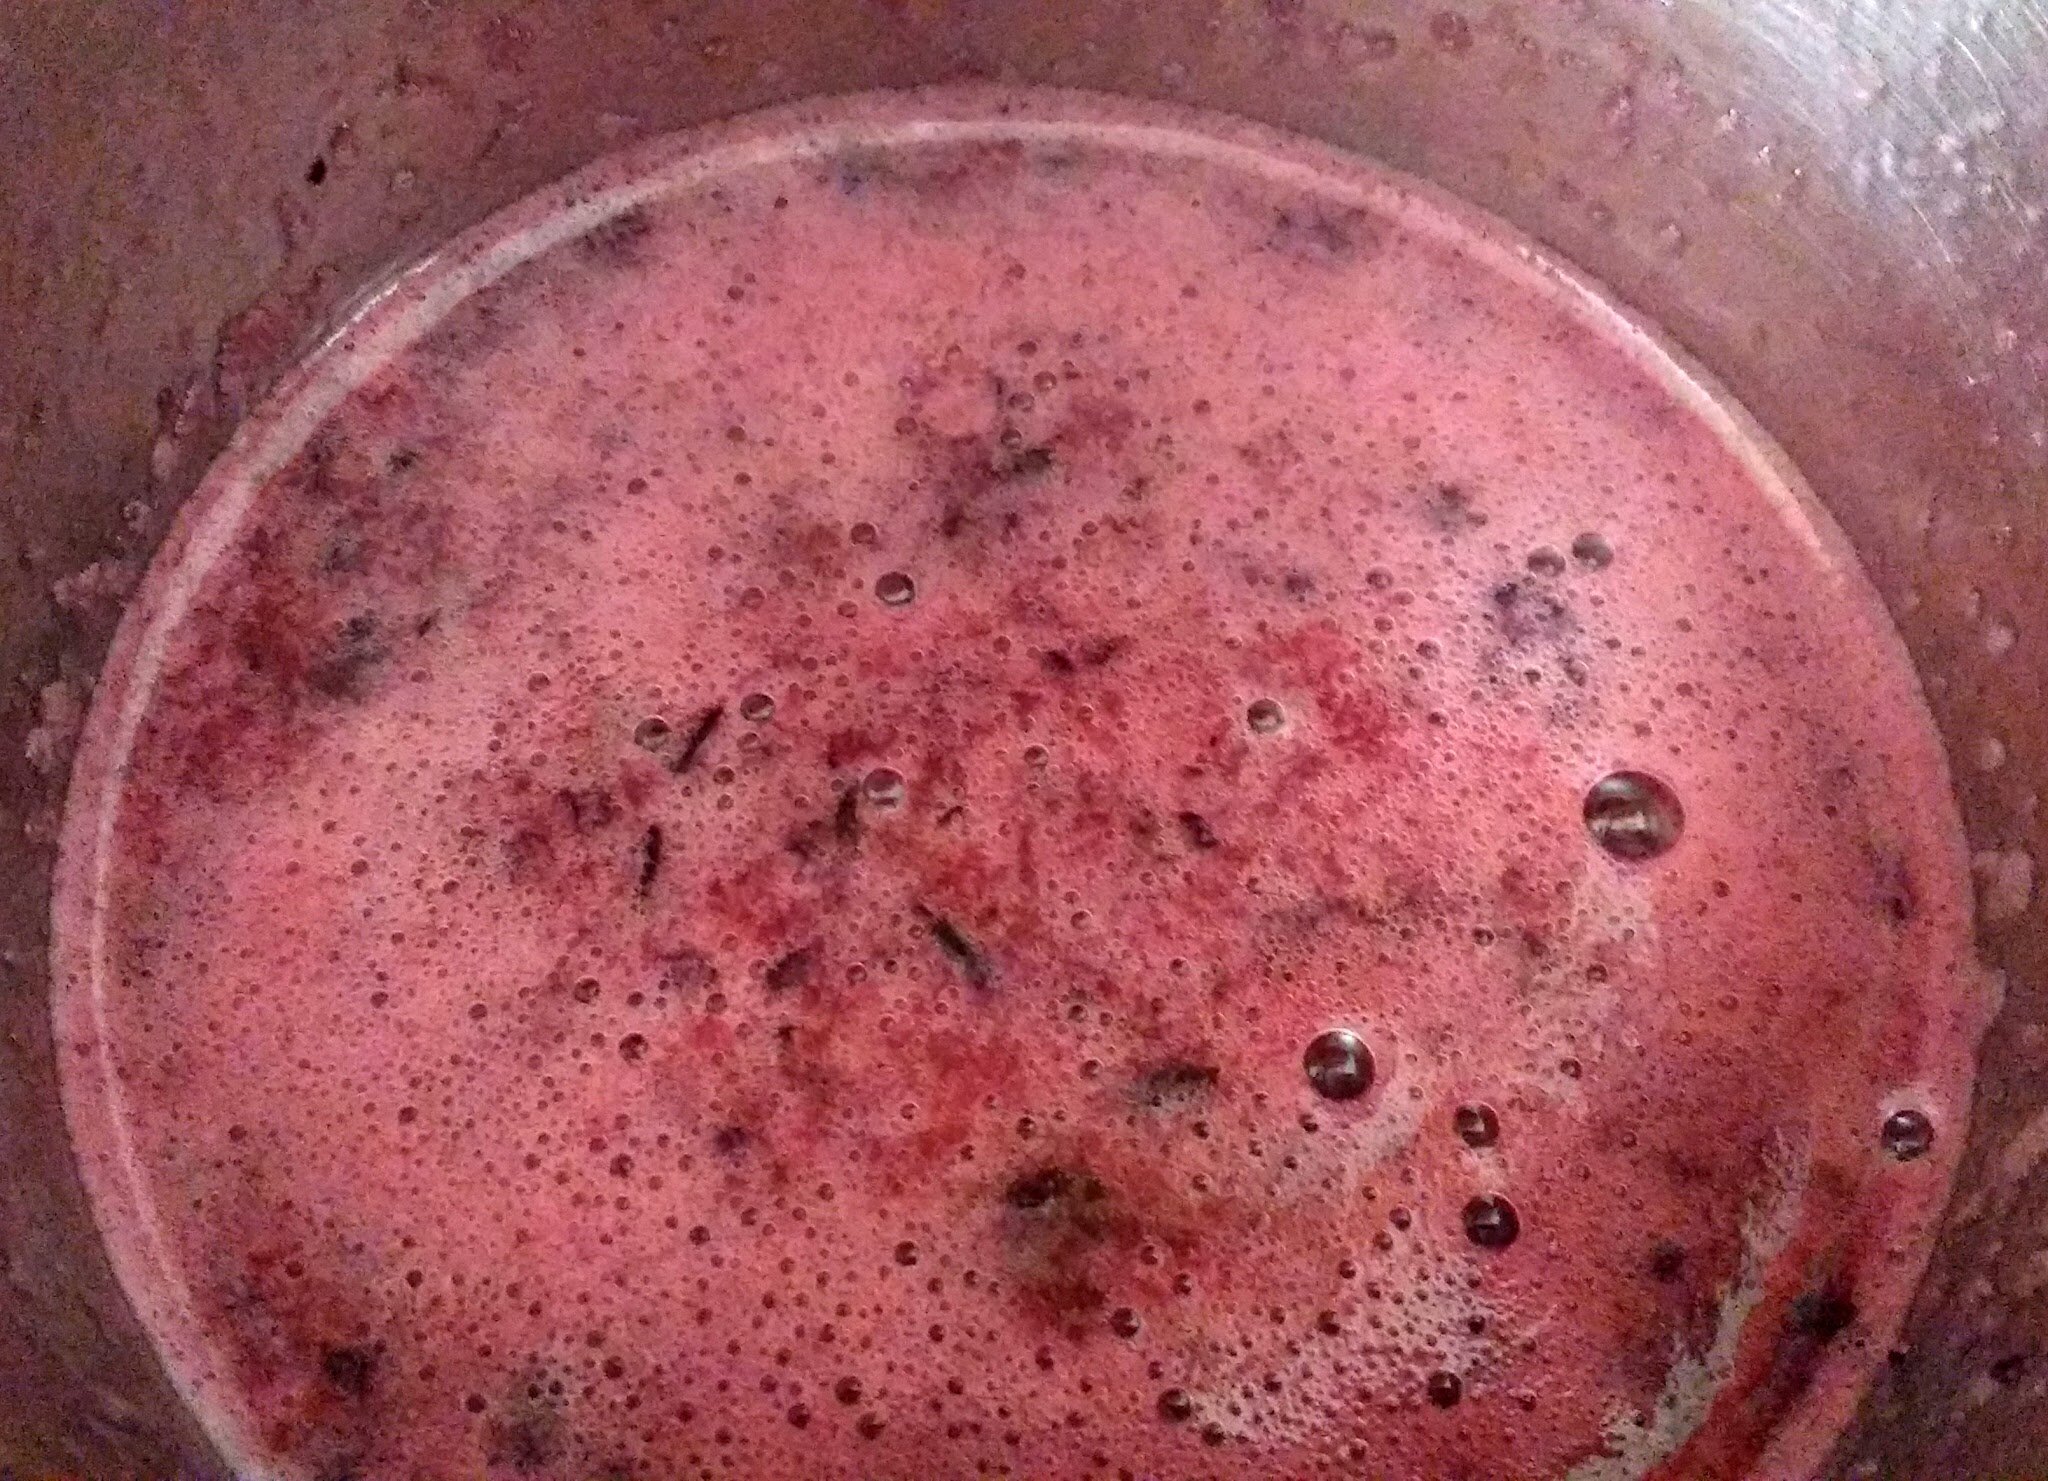 Black grape juice in blender jar.